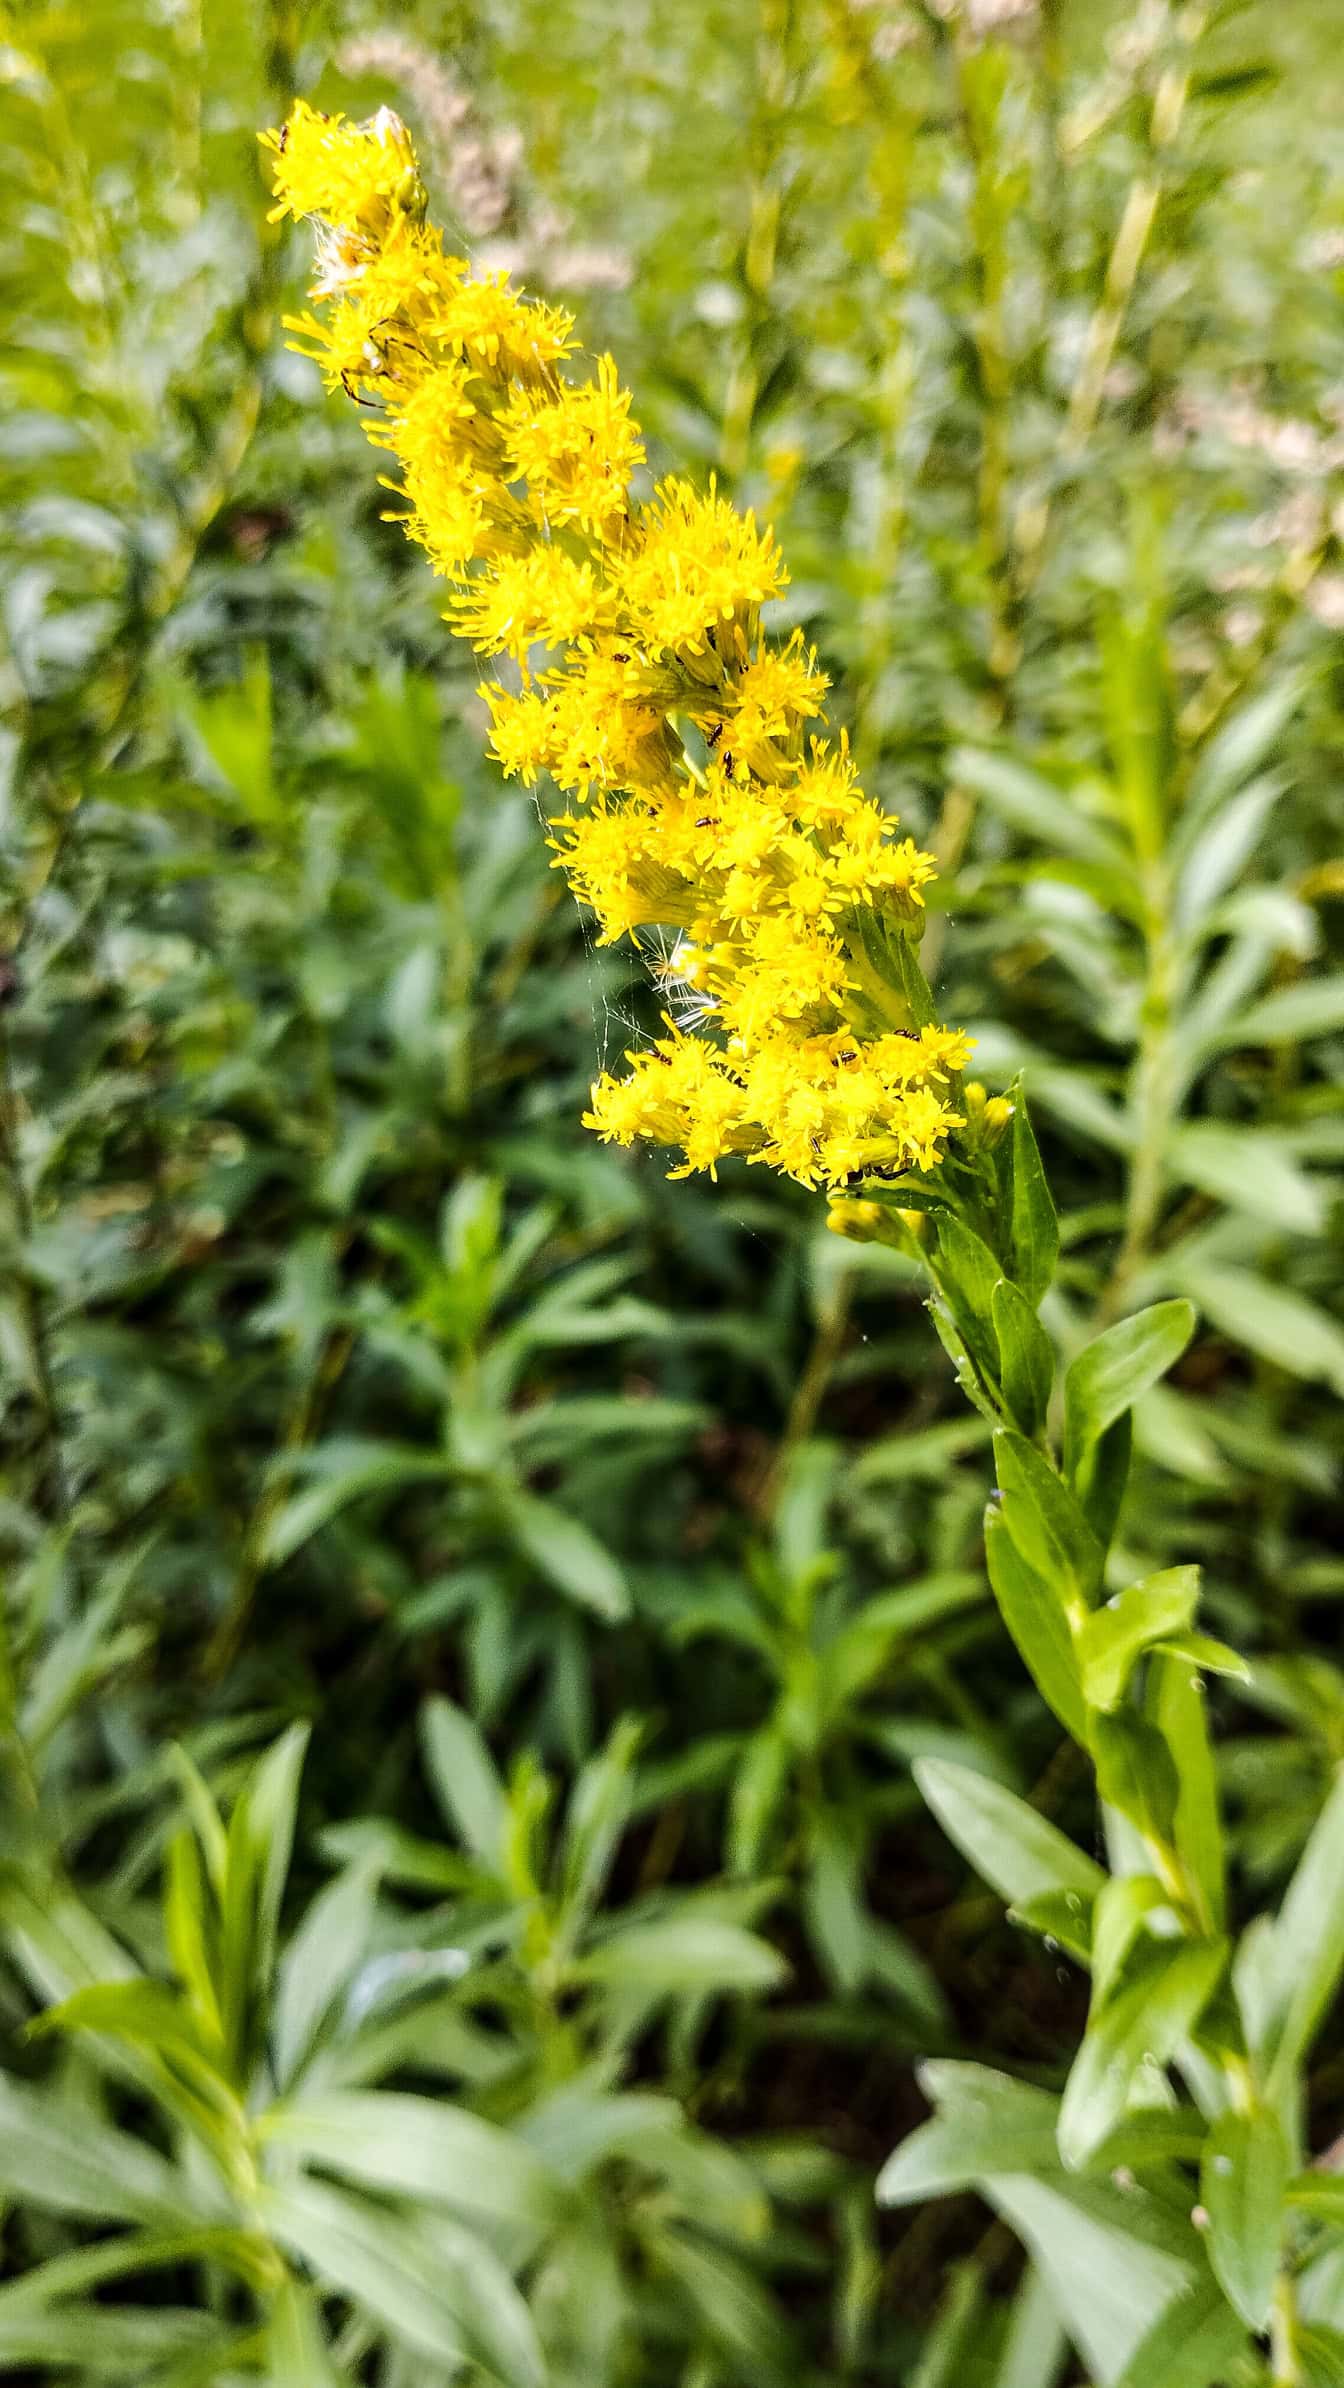 Una flor conocida como vara de oro canadiense (Solidago canadensis) una flor amarilla en plena floración